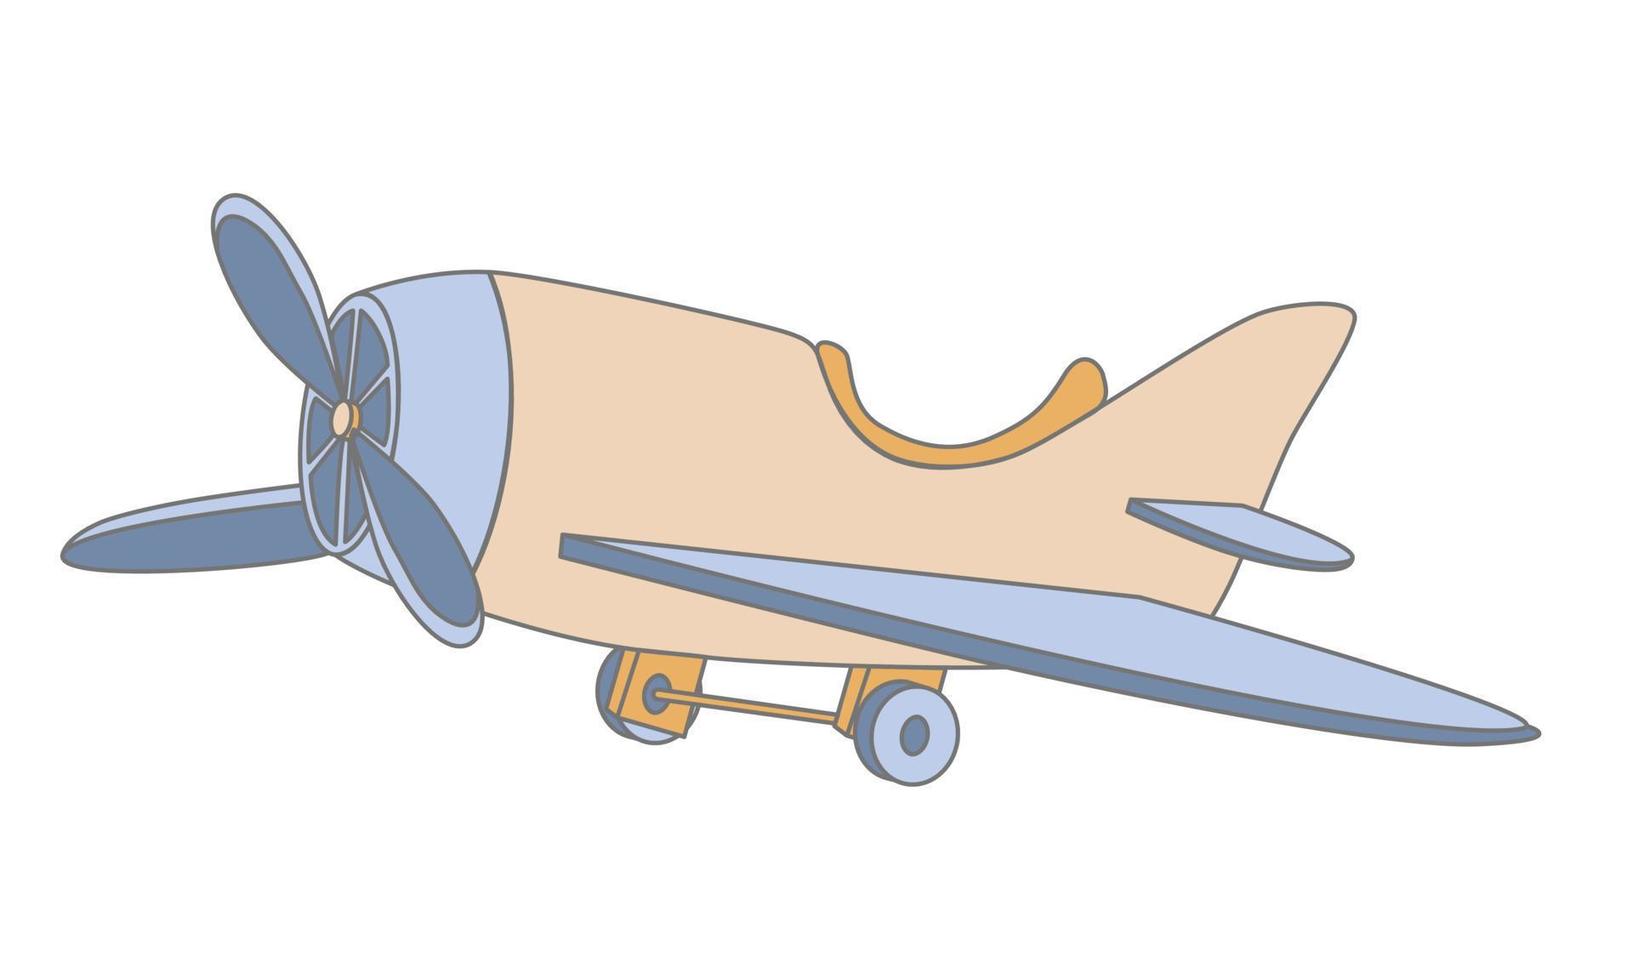 juguete de avión para niños. lindo avión vintage de madera para bebé. ilustración vectorial dibujada a mano en estilo de dibujos animados sobre fondo blanco vector